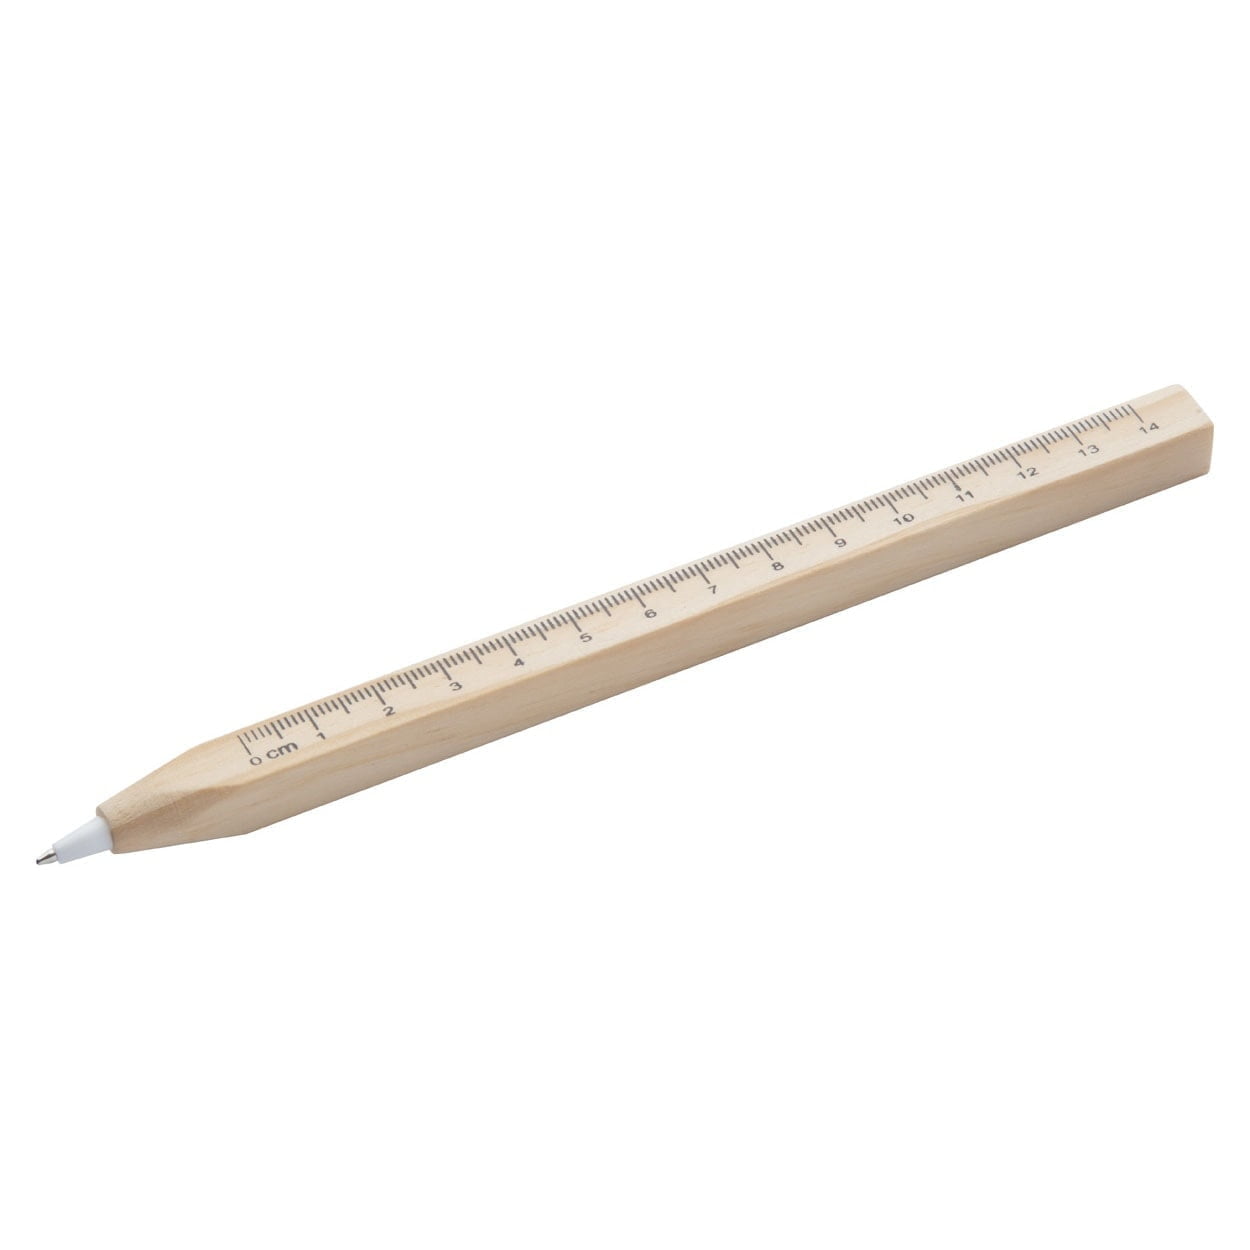 Pens Burnham ballpoint pen with ruler